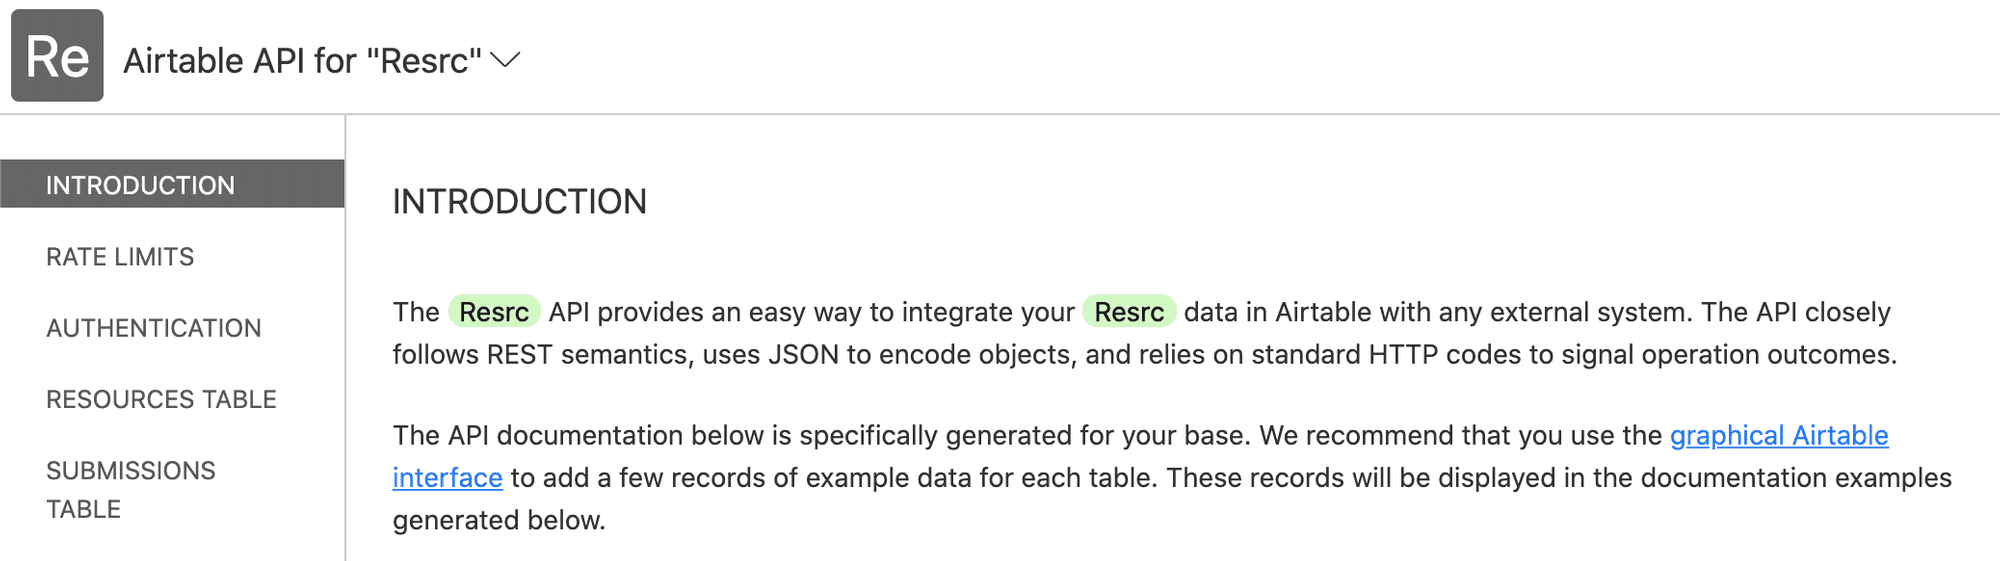 Airtable API documentation for Resrc